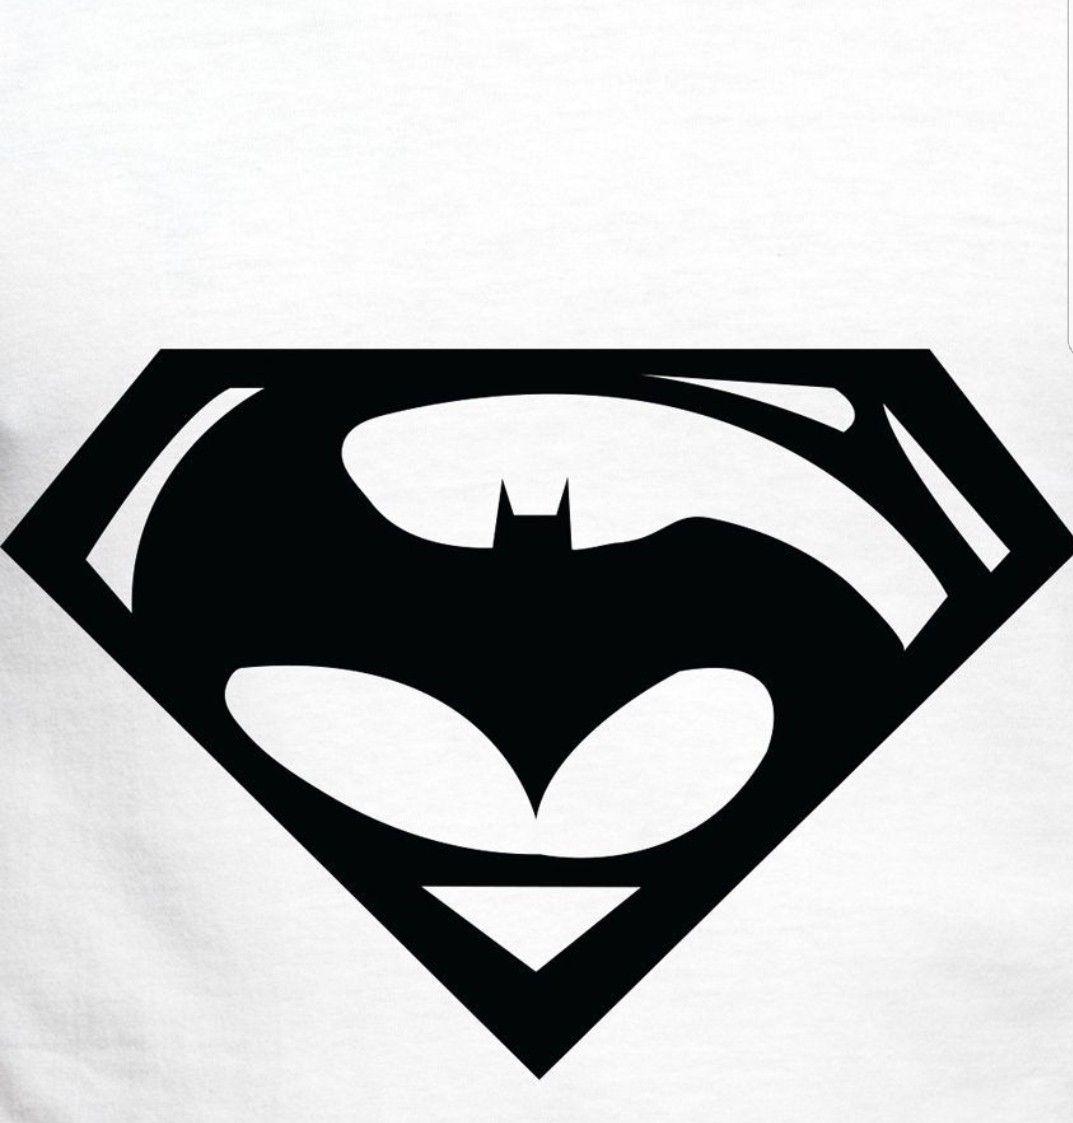 Batman vs Superman New Logo - Batman Vs. Superman Logo Wall Display - GAMESQ8.com